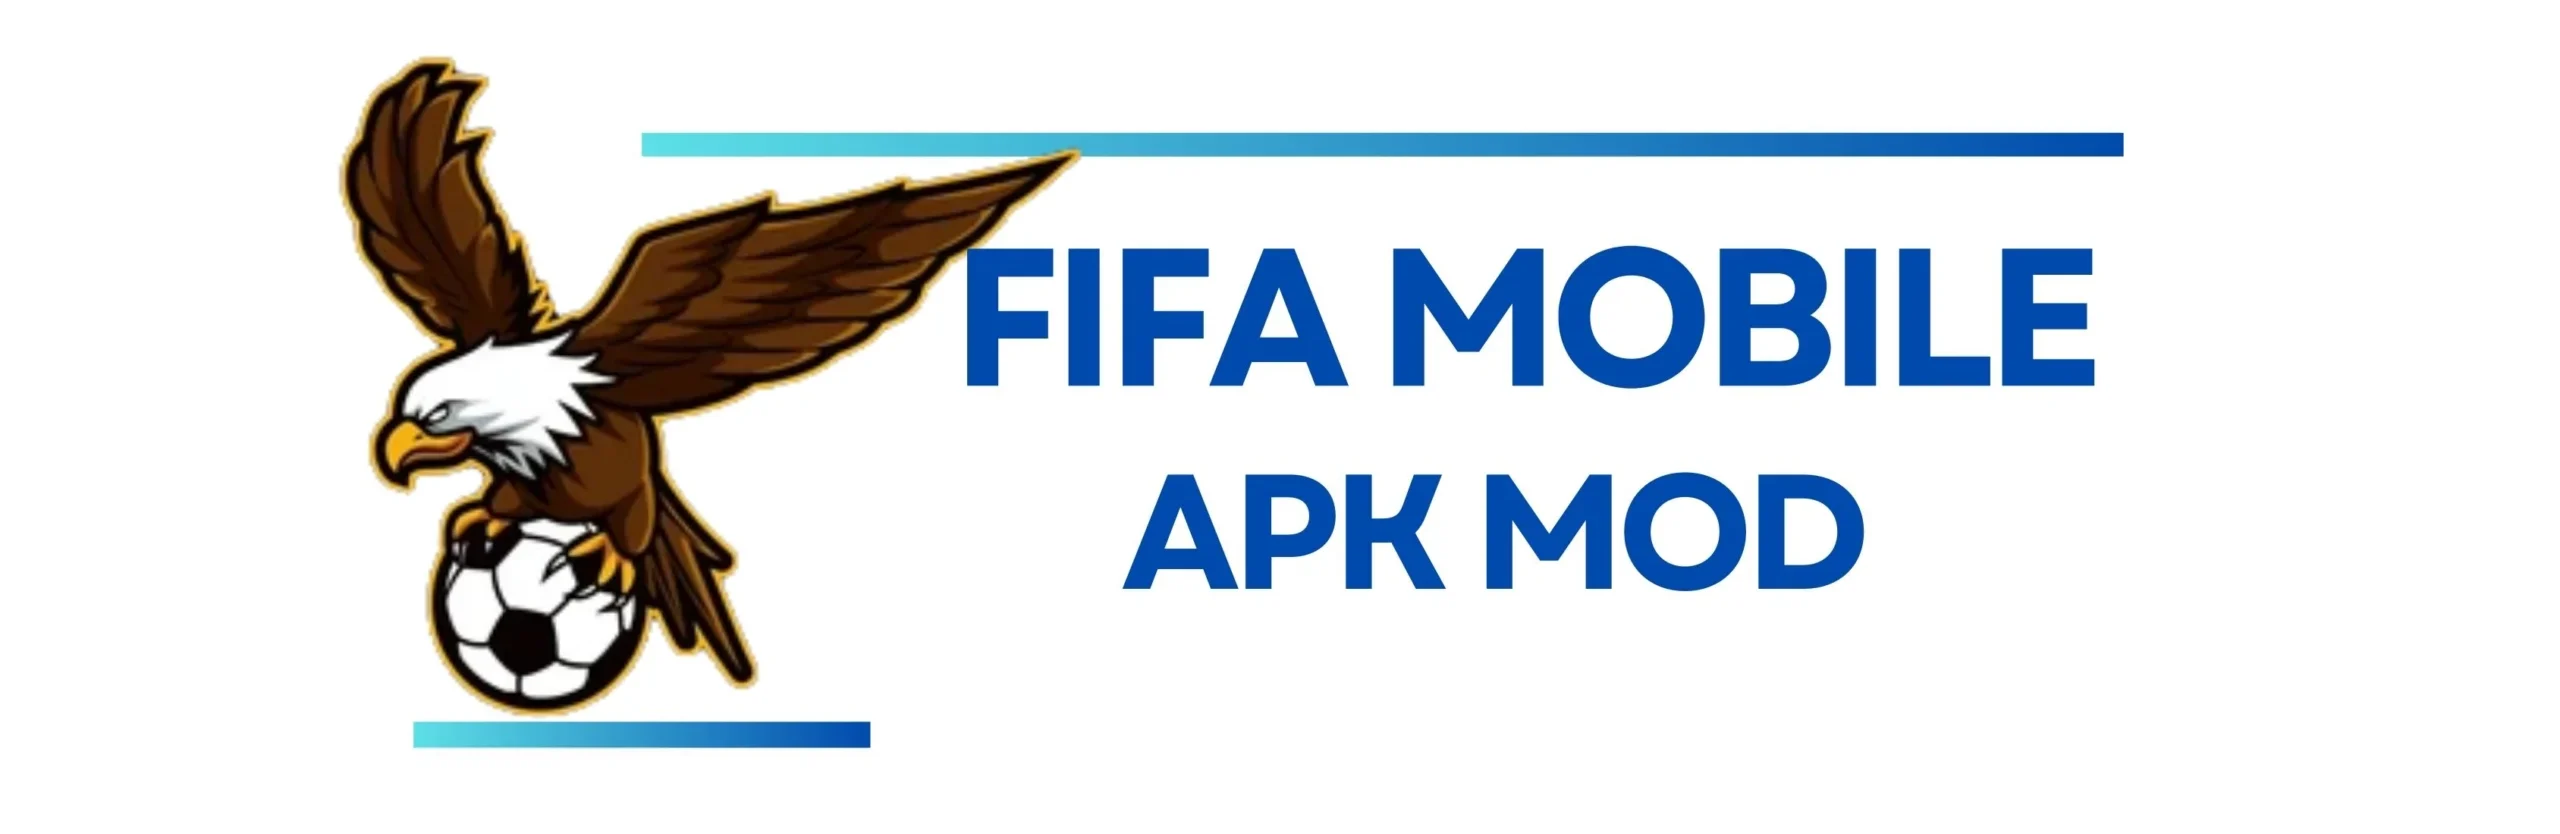 Fifa mobile apk mod official logo